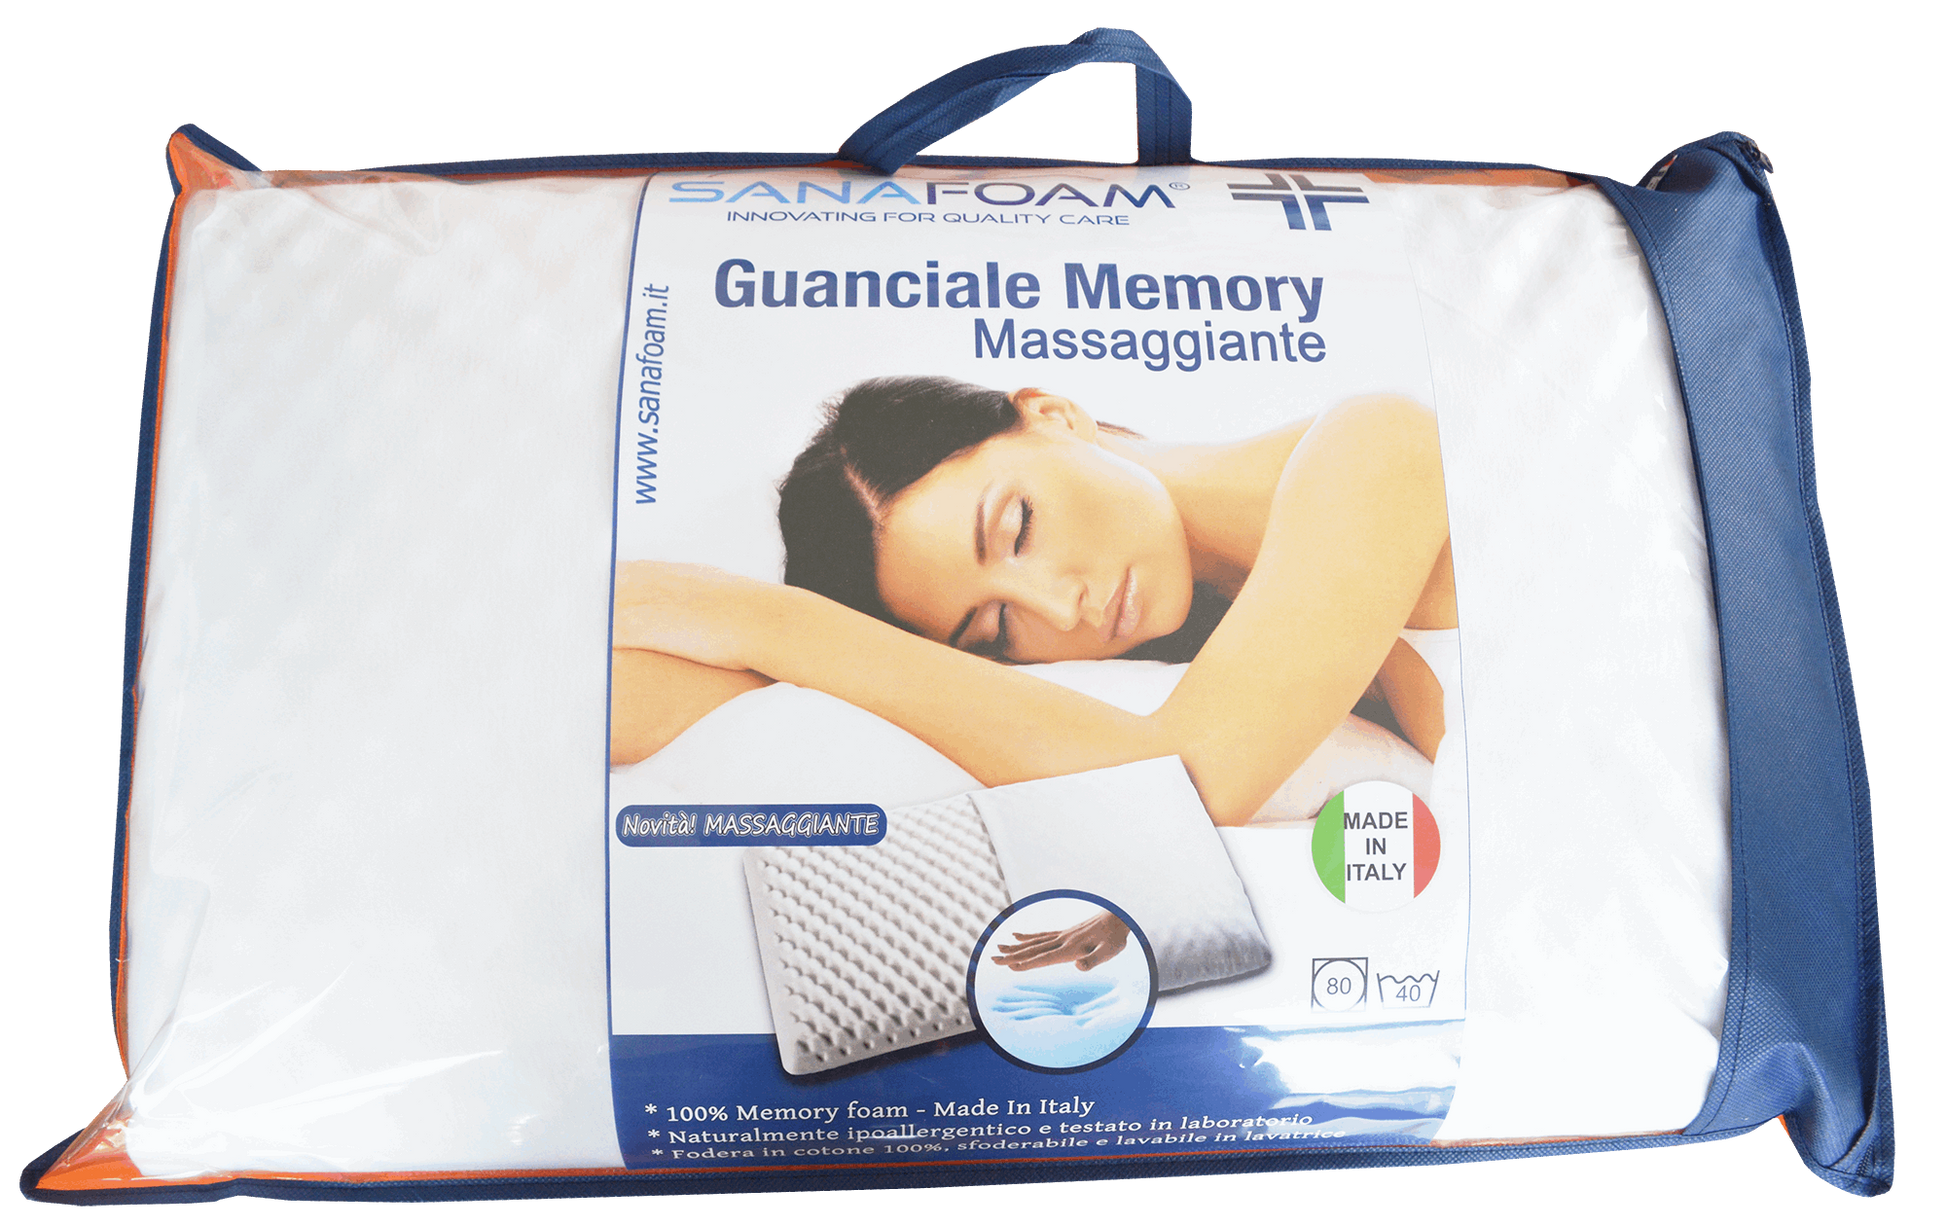 Guanciale Massaggiante Memory Foam - SANAFOAM - I migliori prodotti Made in Italy da Fiera di Monza Shop - Solo 42€! Acquista subito su Fiera di Monza Shop!